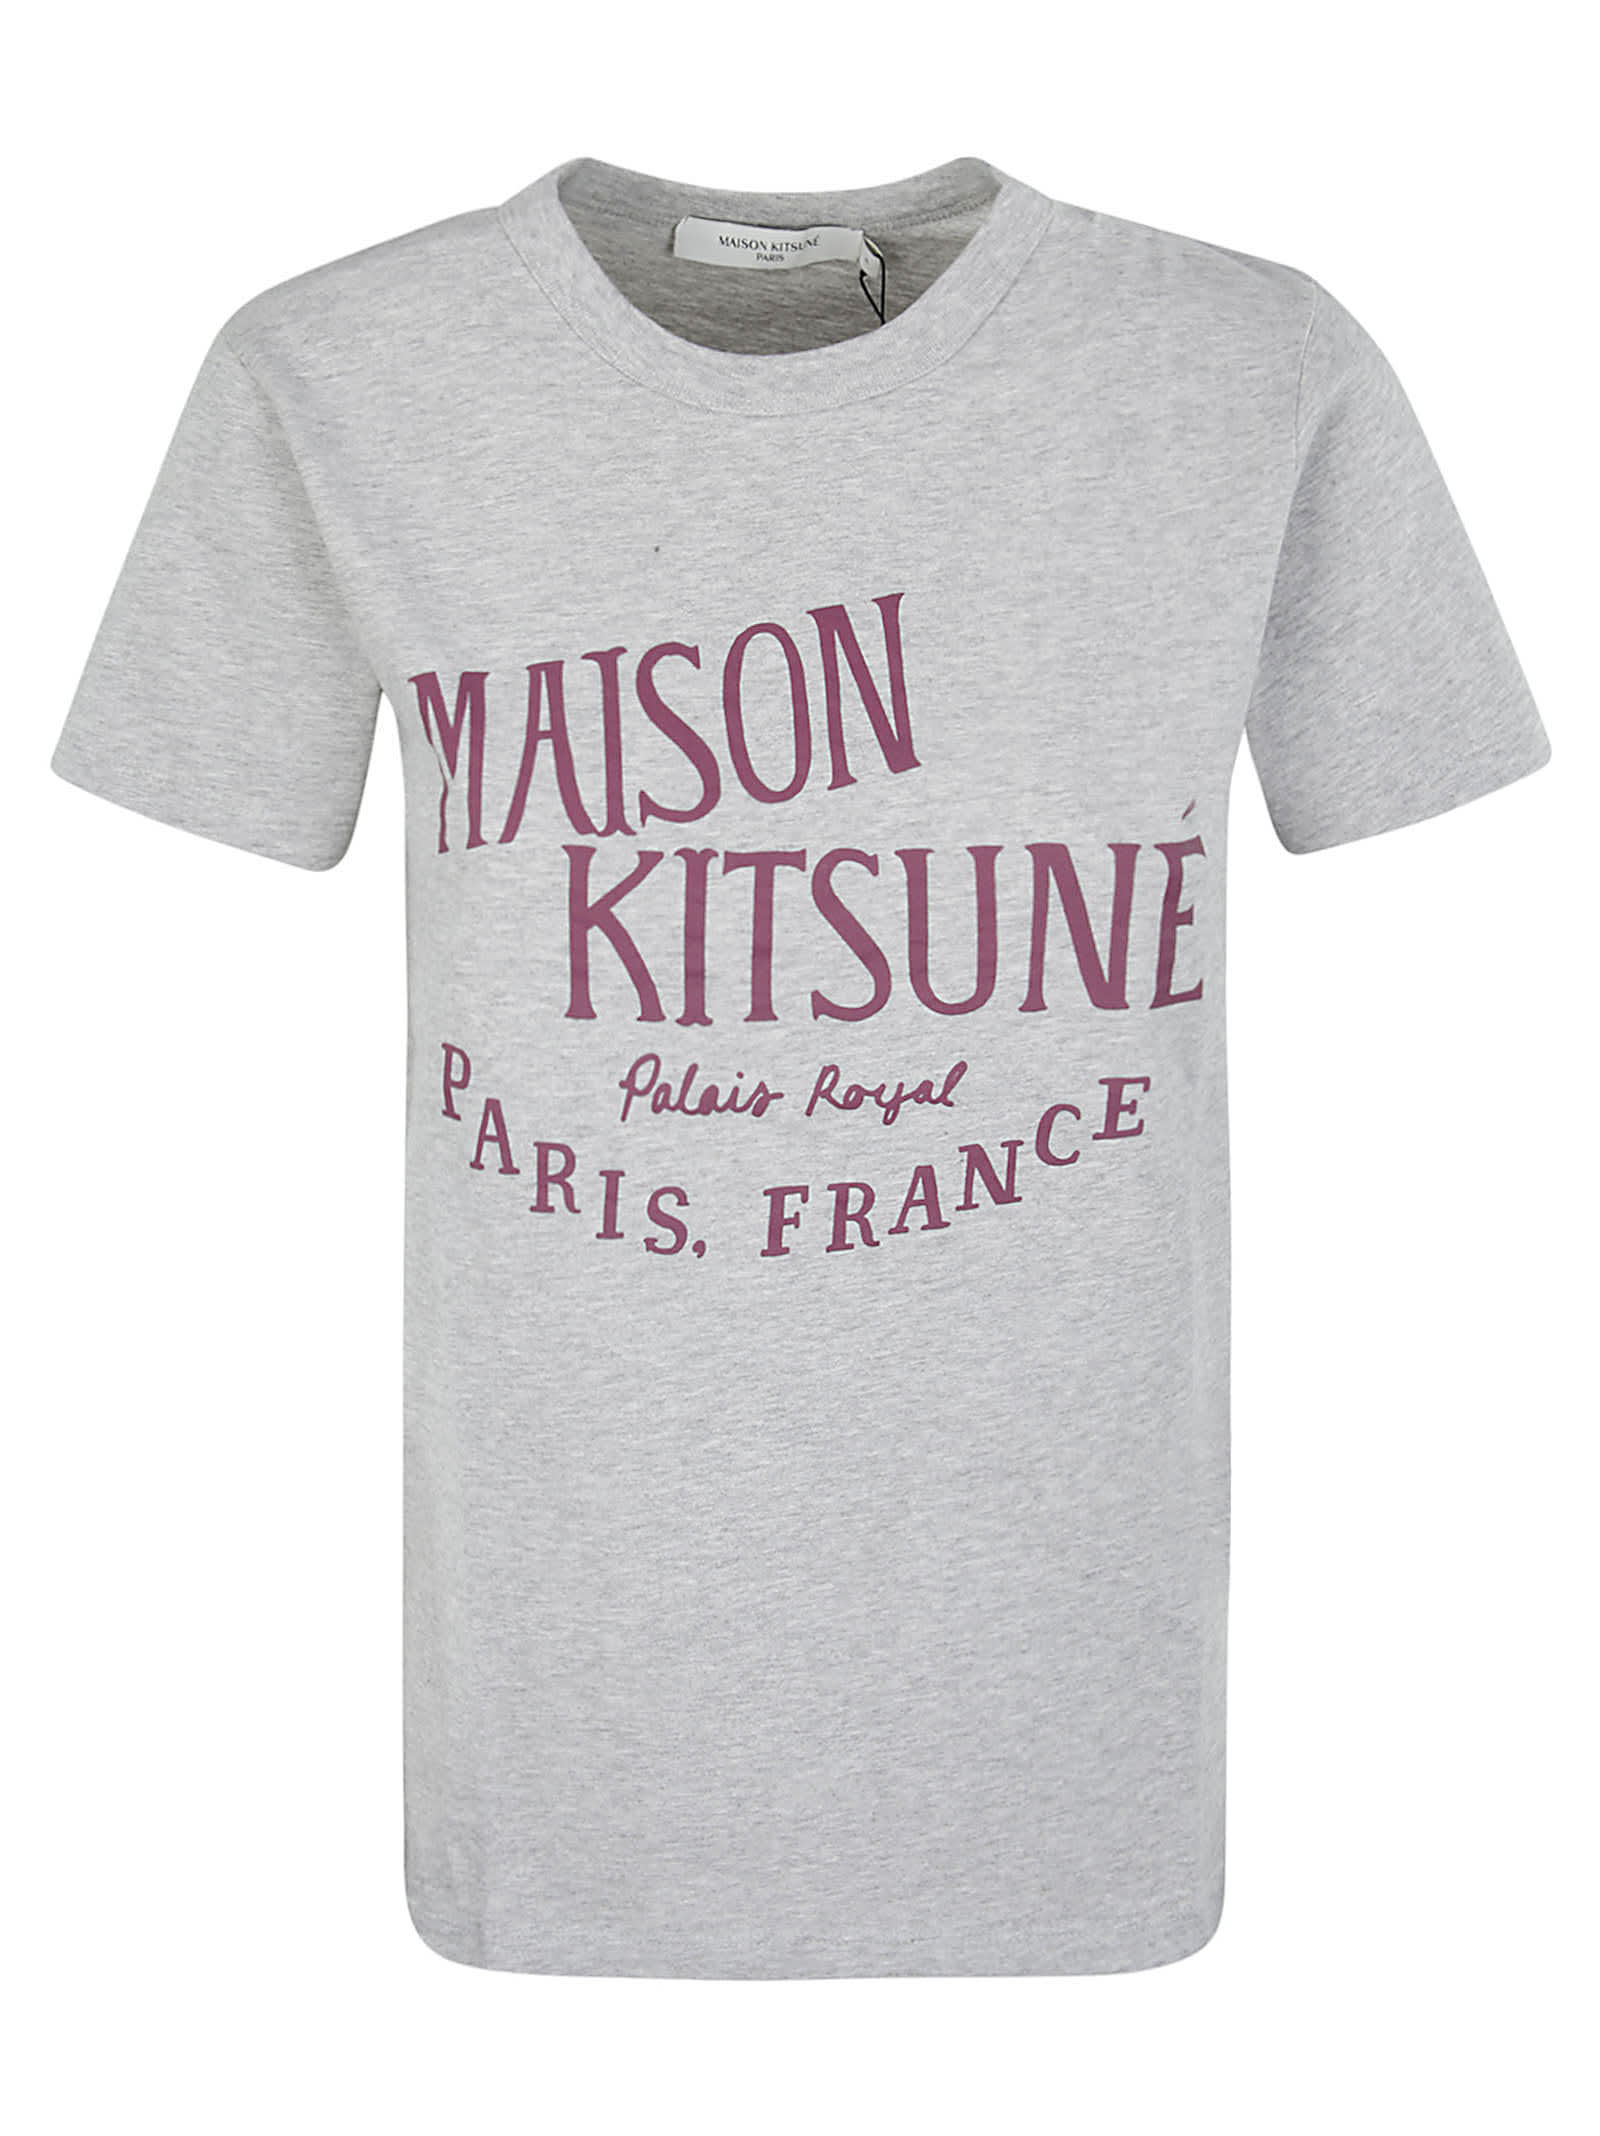 Maison Kitsuné Palais Royal Print T-shirt In H120 | ModeSens